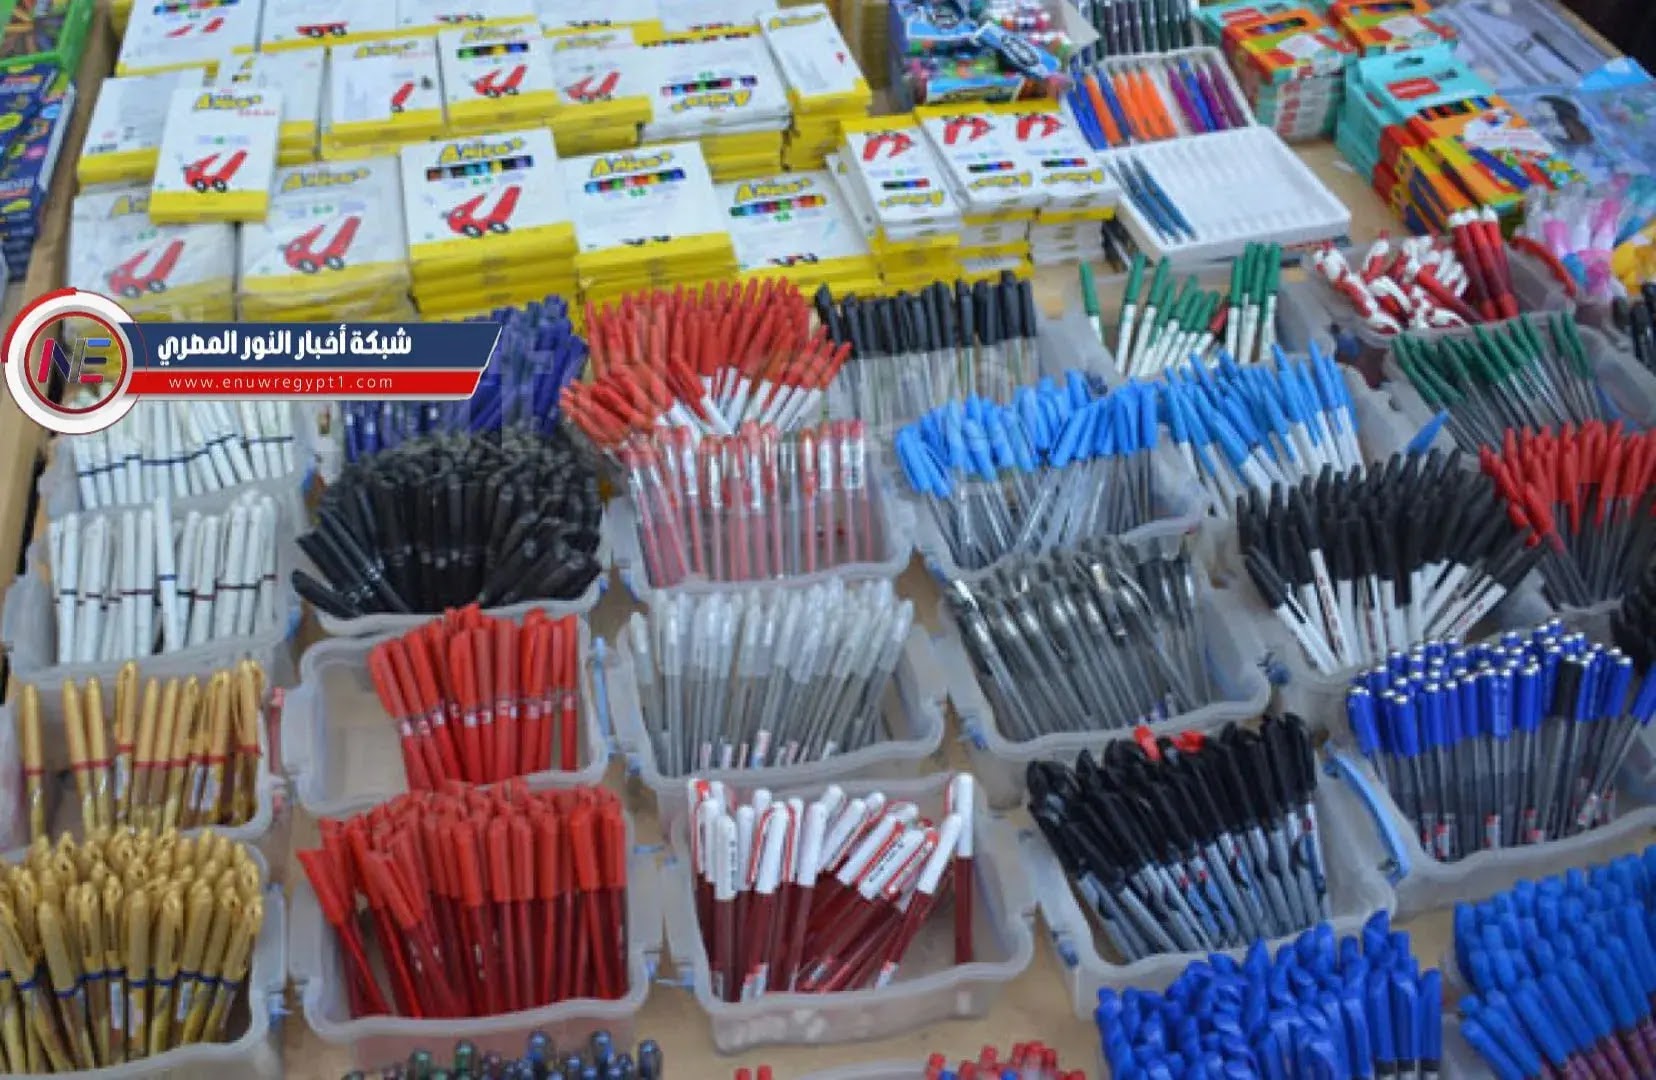 أسعار الأدوات المدرسية المكتبية الكراس والكشكول والاقلام في الفجالة بالجملة والقطاعي في مصر 2023